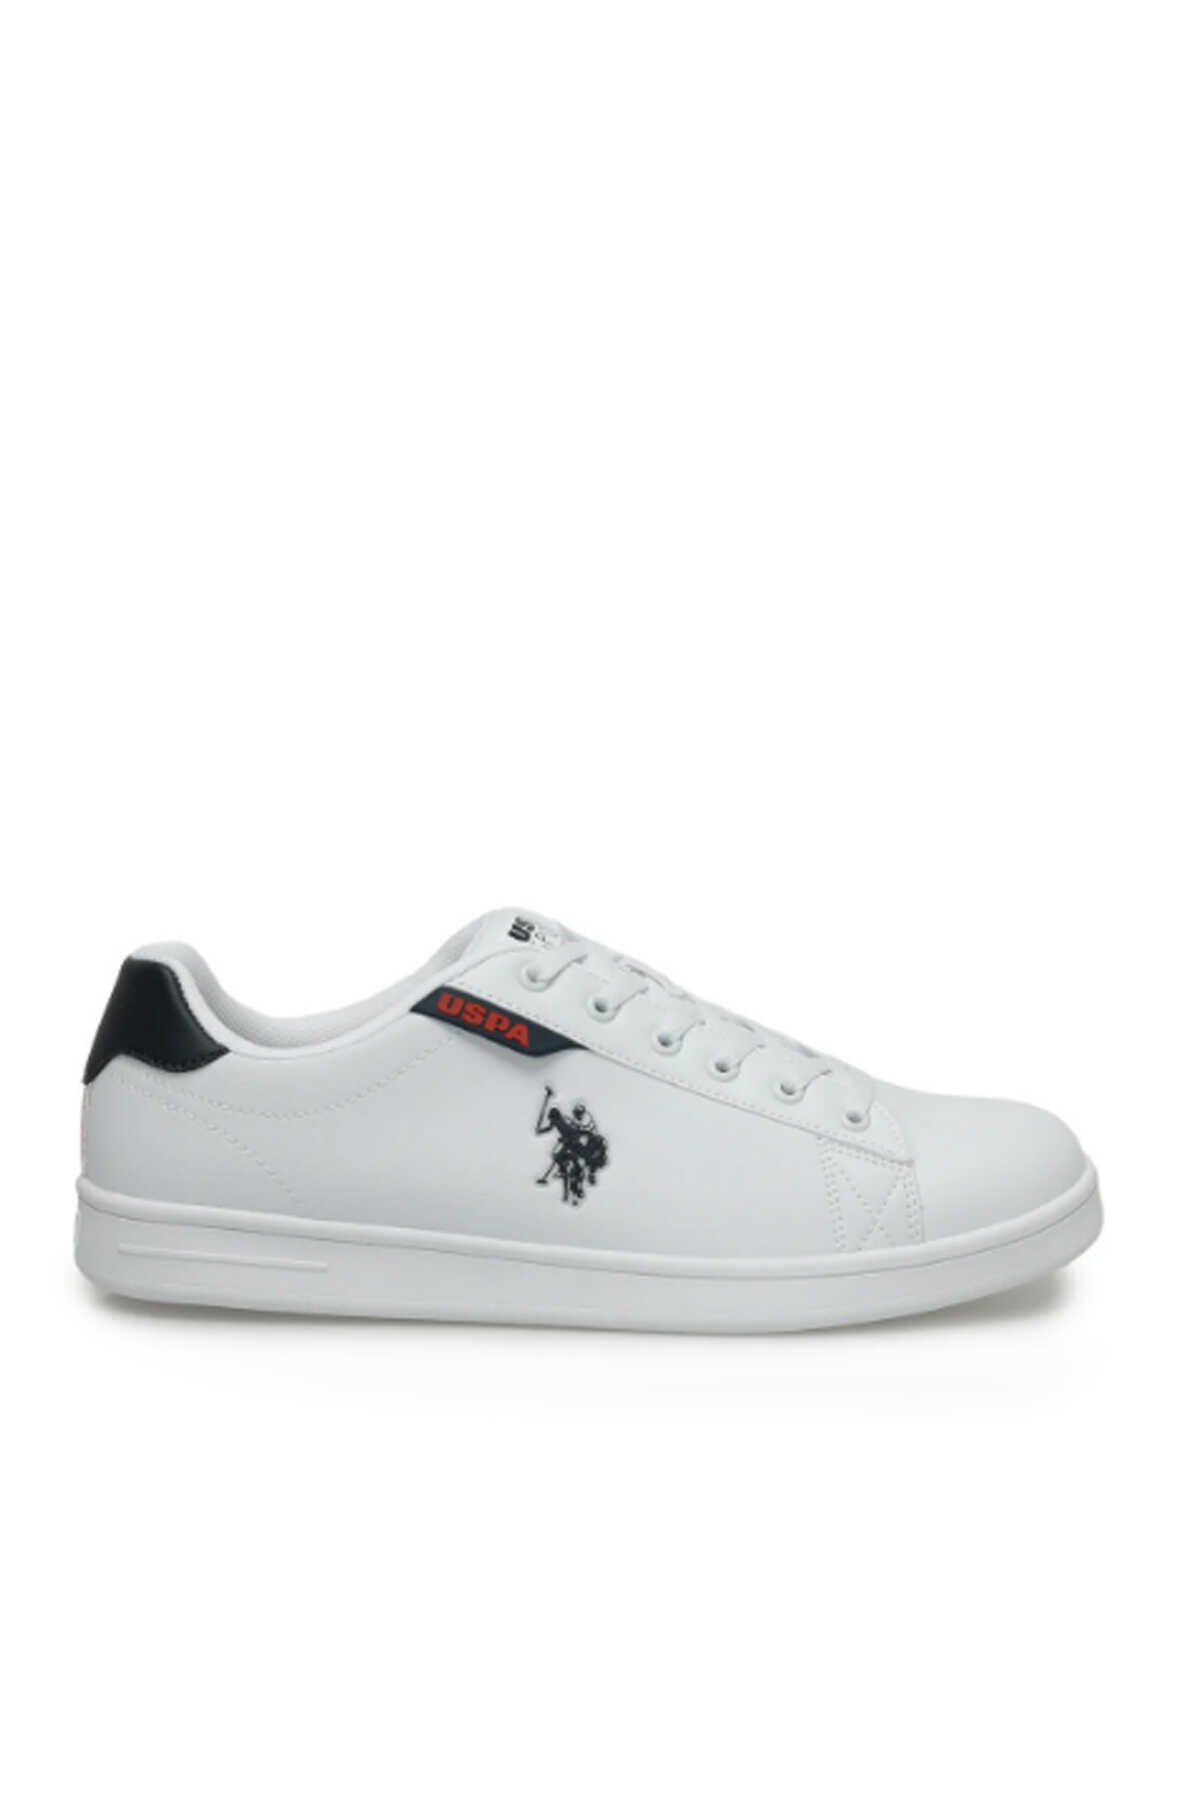 U.S. Polo Assn. - U.S. Polo Assn. 4M COSTA 4FX Erkek Sneaker Ayakkabı Beyaz